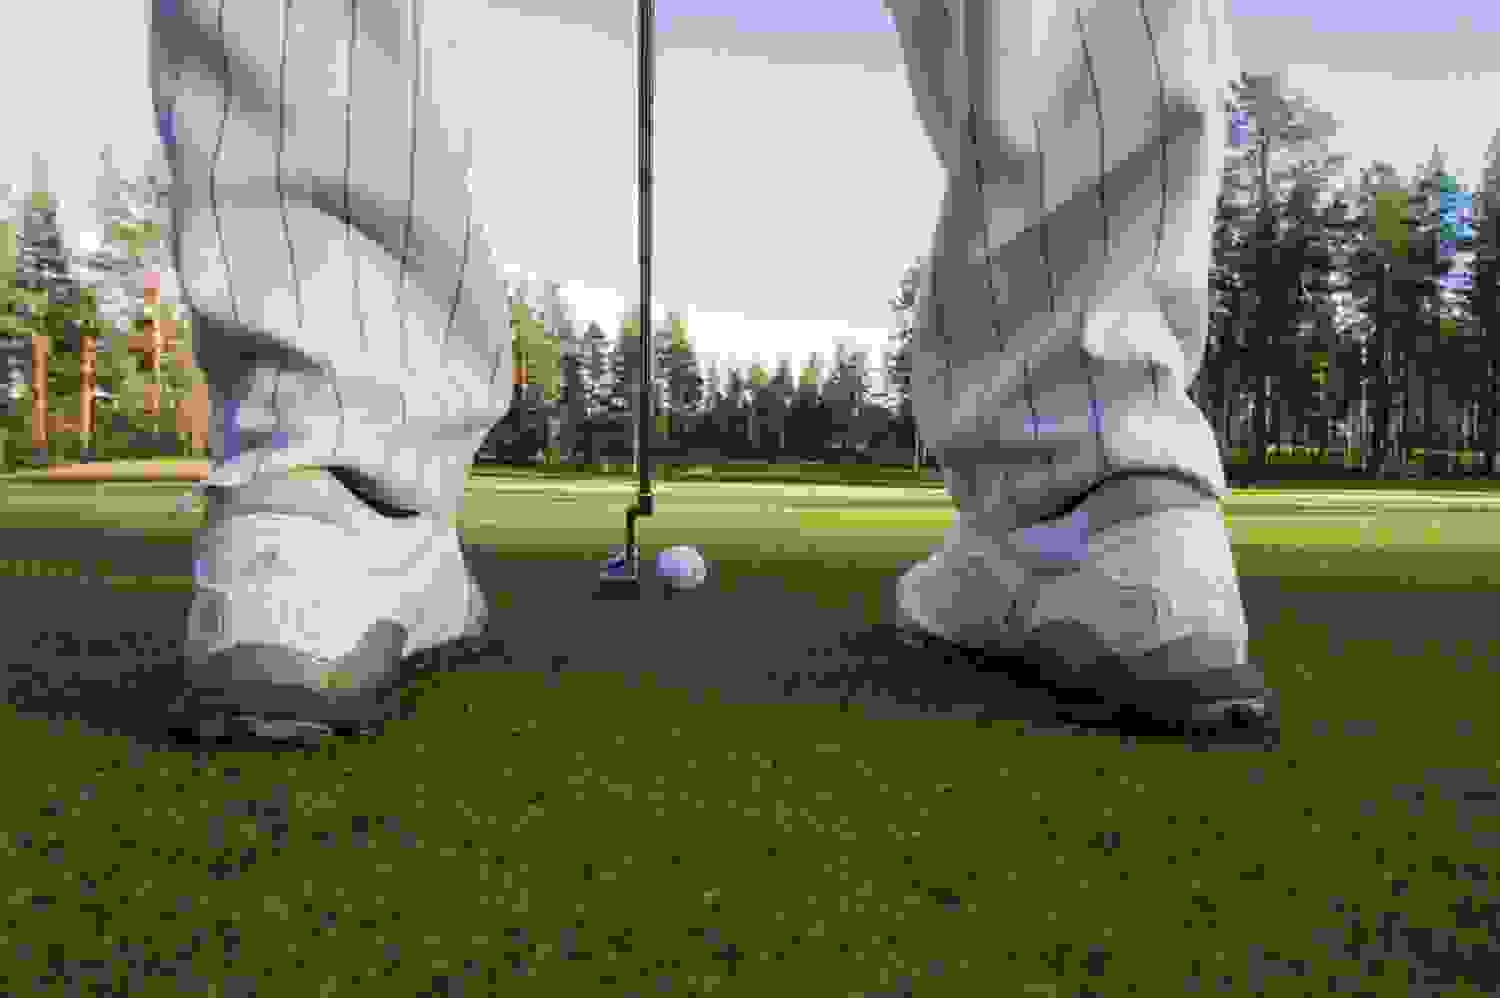 golf-puttaus-1500x1000.jpg